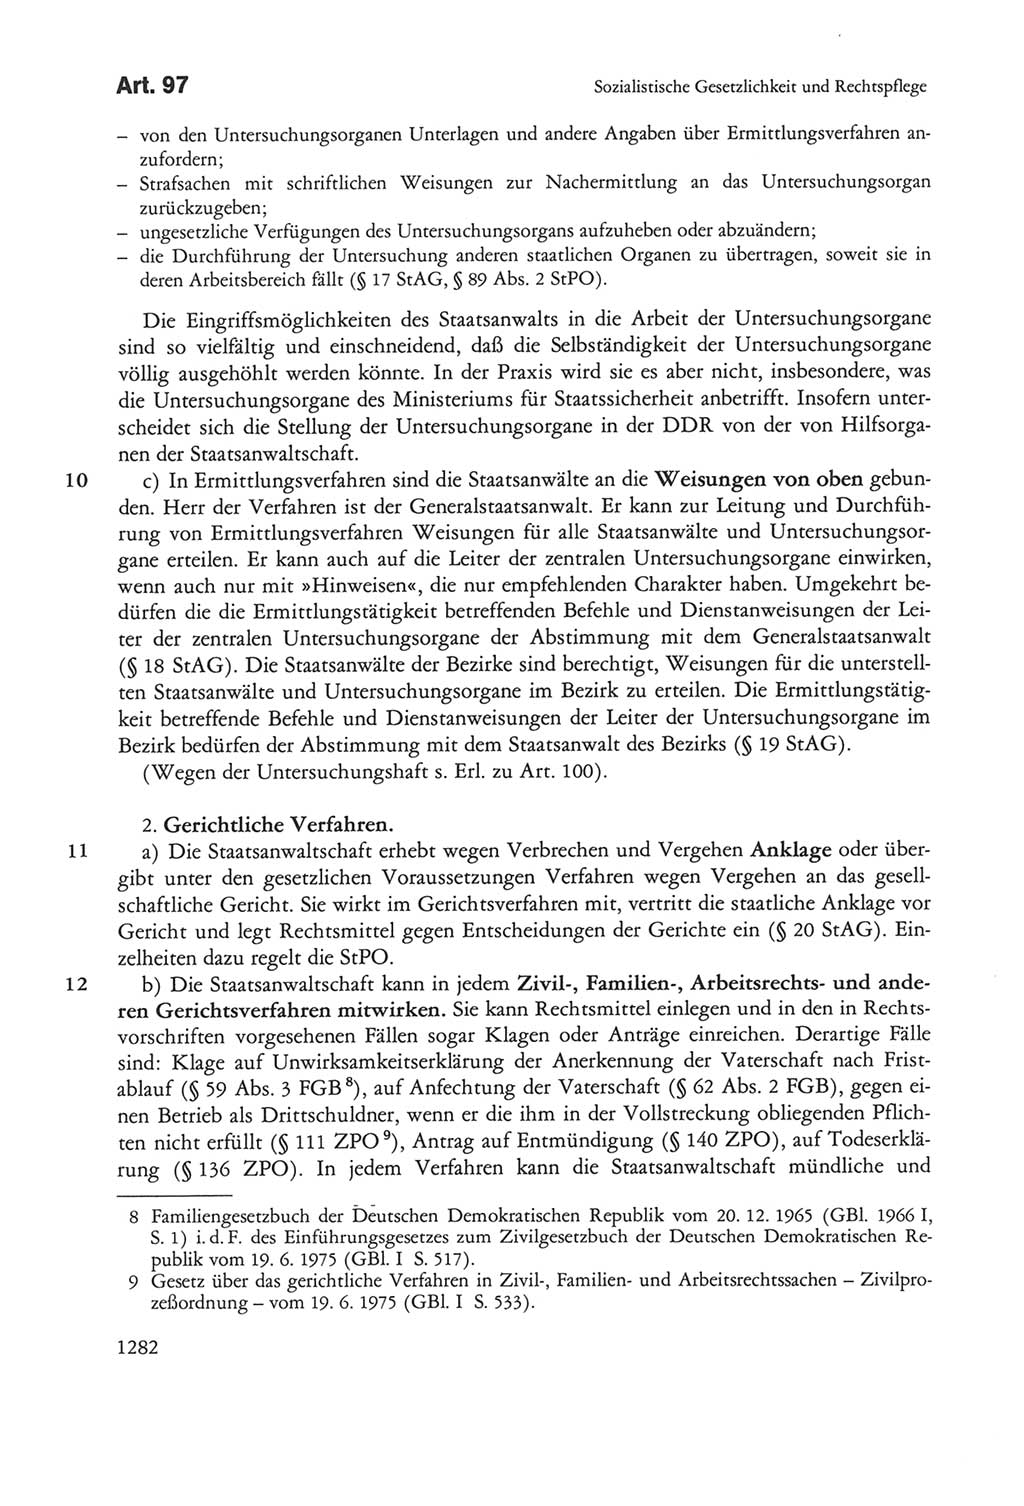 Die sozialistische Verfassung der Deutschen Demokratischen Republik (DDR), Kommentar mit einem Nachtrag 1997, Seite 1282 (Soz. Verf. DDR Komm. Nachtr. 1997, S. 1282)